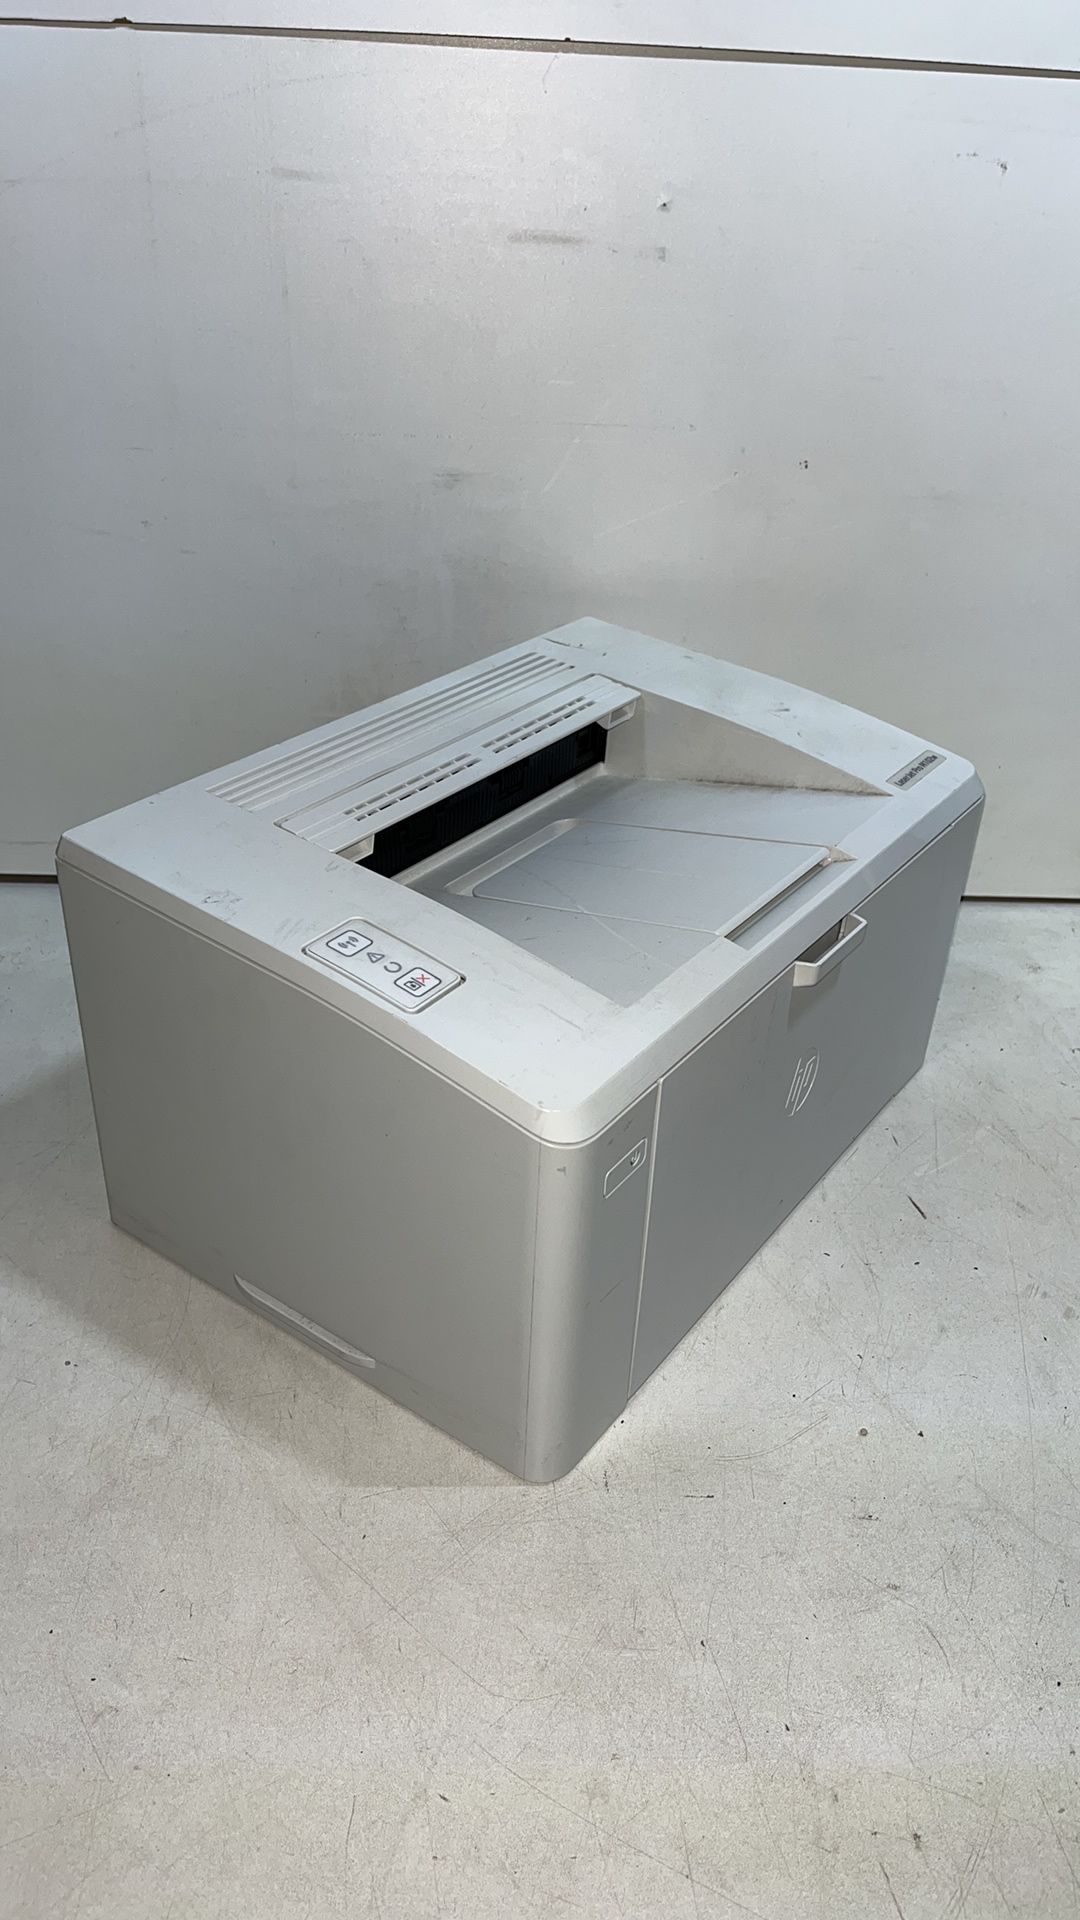 HP LaserJet Pro M102W Printer - Image 4 of 5